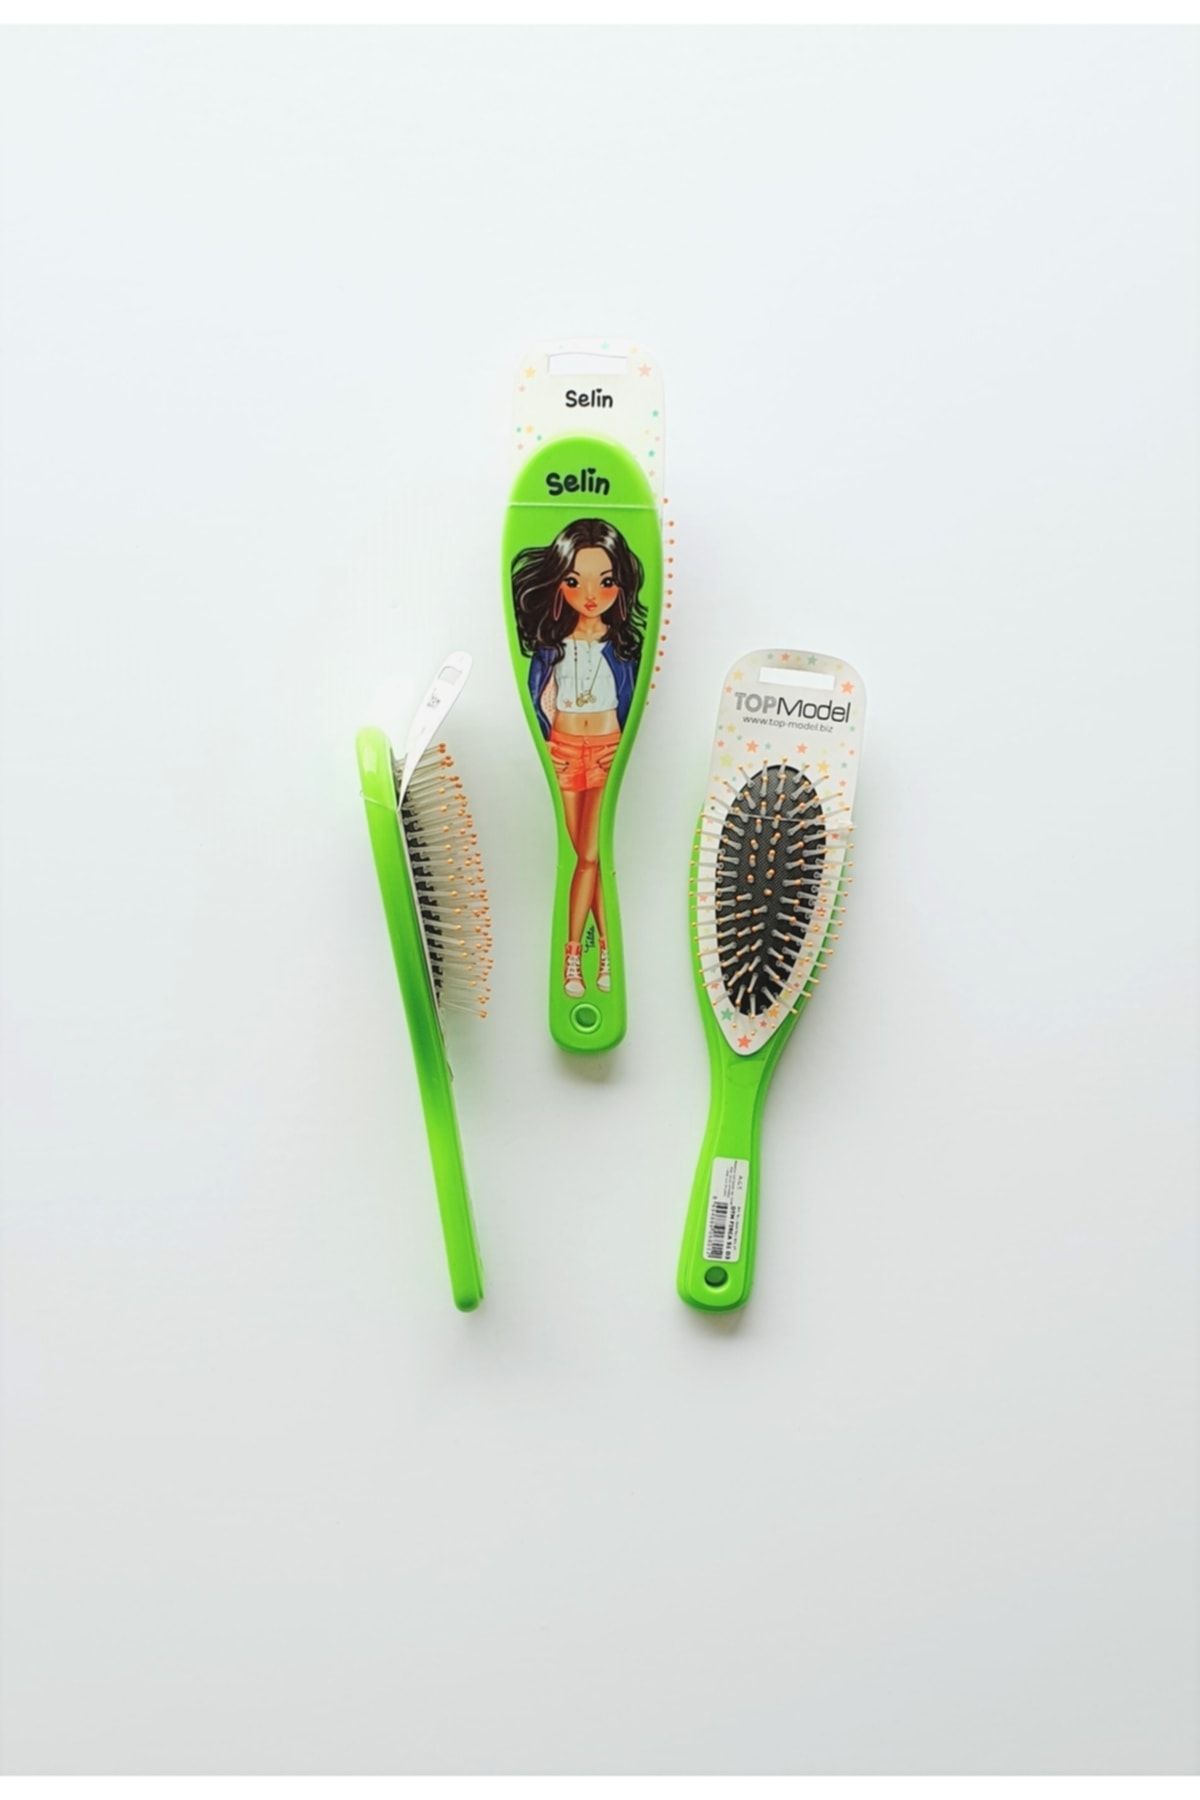 Top Model Isme Özel Saç Fırçası - Selin (neon Yeşil)